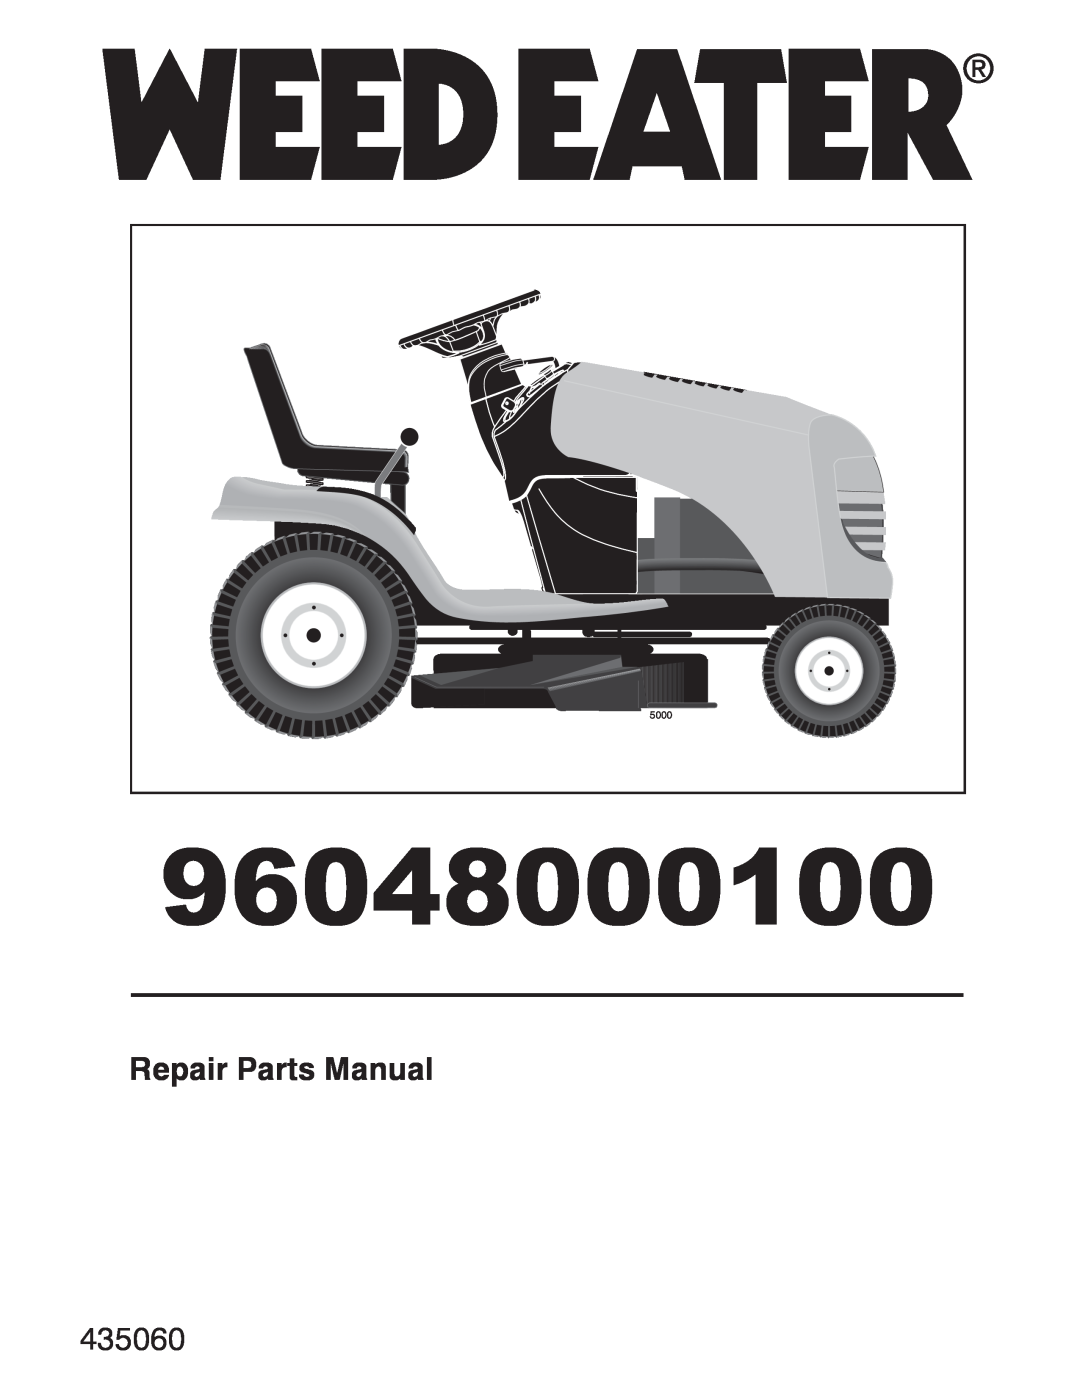 Weed Eater 96048000100 manual Repair Parts Manual, 435060, 5000 